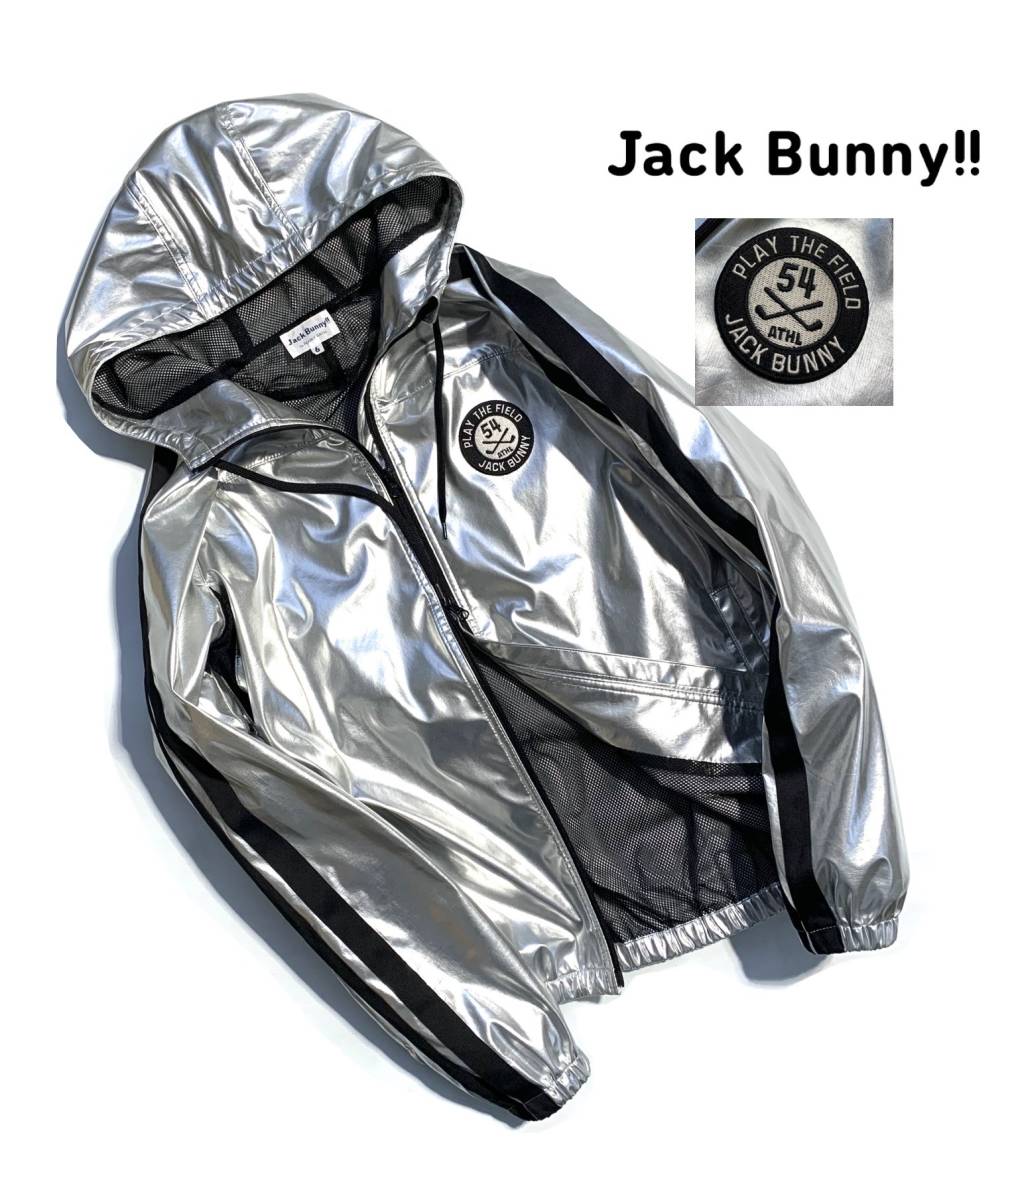 充実の品 6(LL) フルジップジャケット ジャックバニー Bunny!! 名作【6(LL)】Jack ロゴ刺繍ワッペン パーリーゲイツ パーカー メンズ シルバー パーリーゲイツ